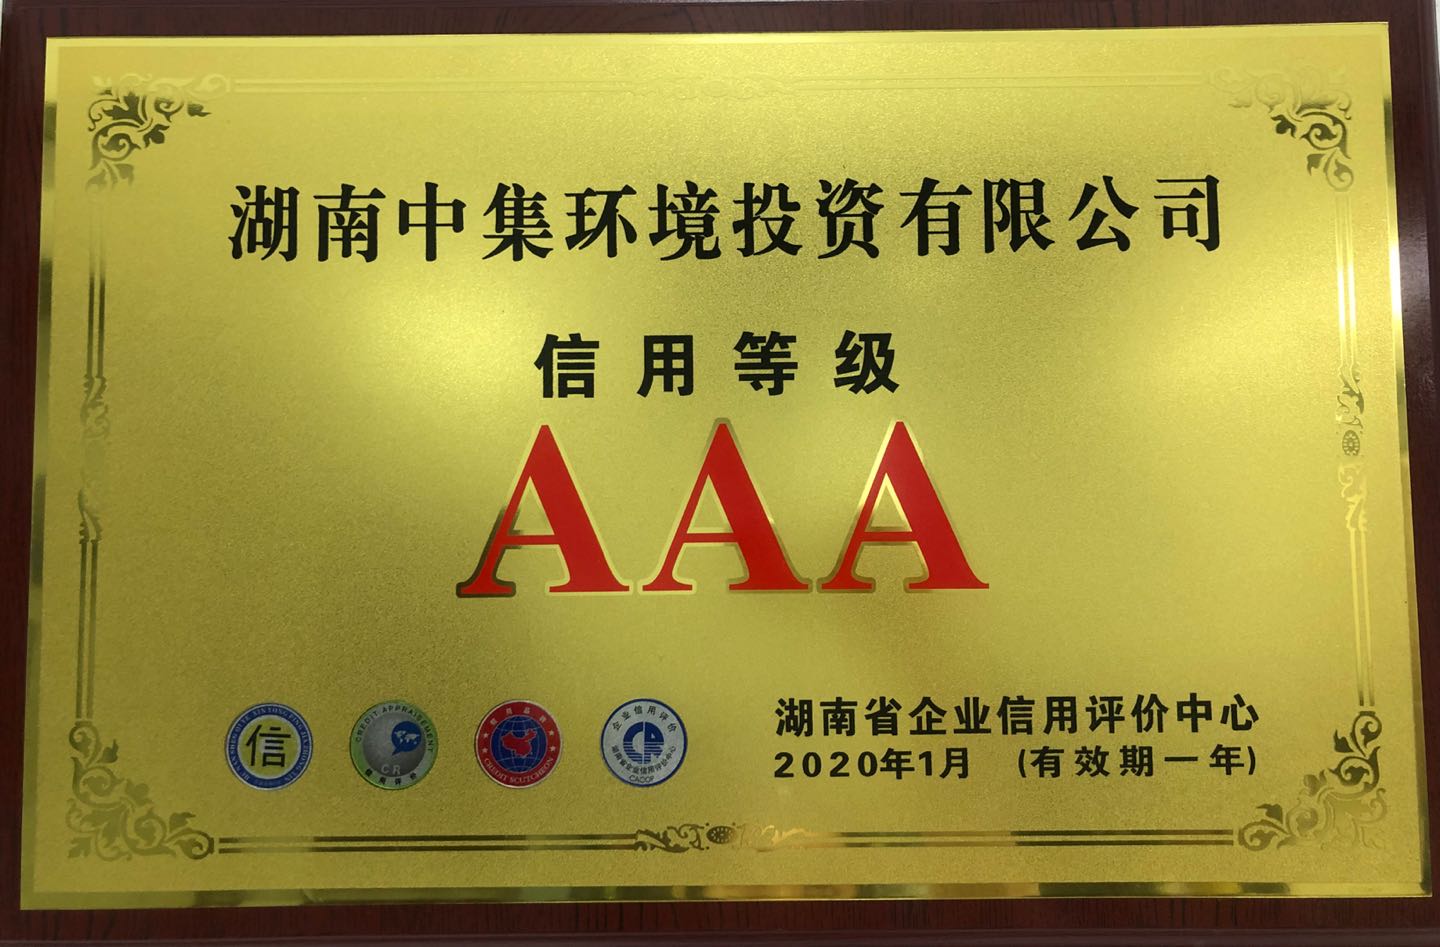 中集环境获评湖南省企业信用评价“AAA级信用单位”